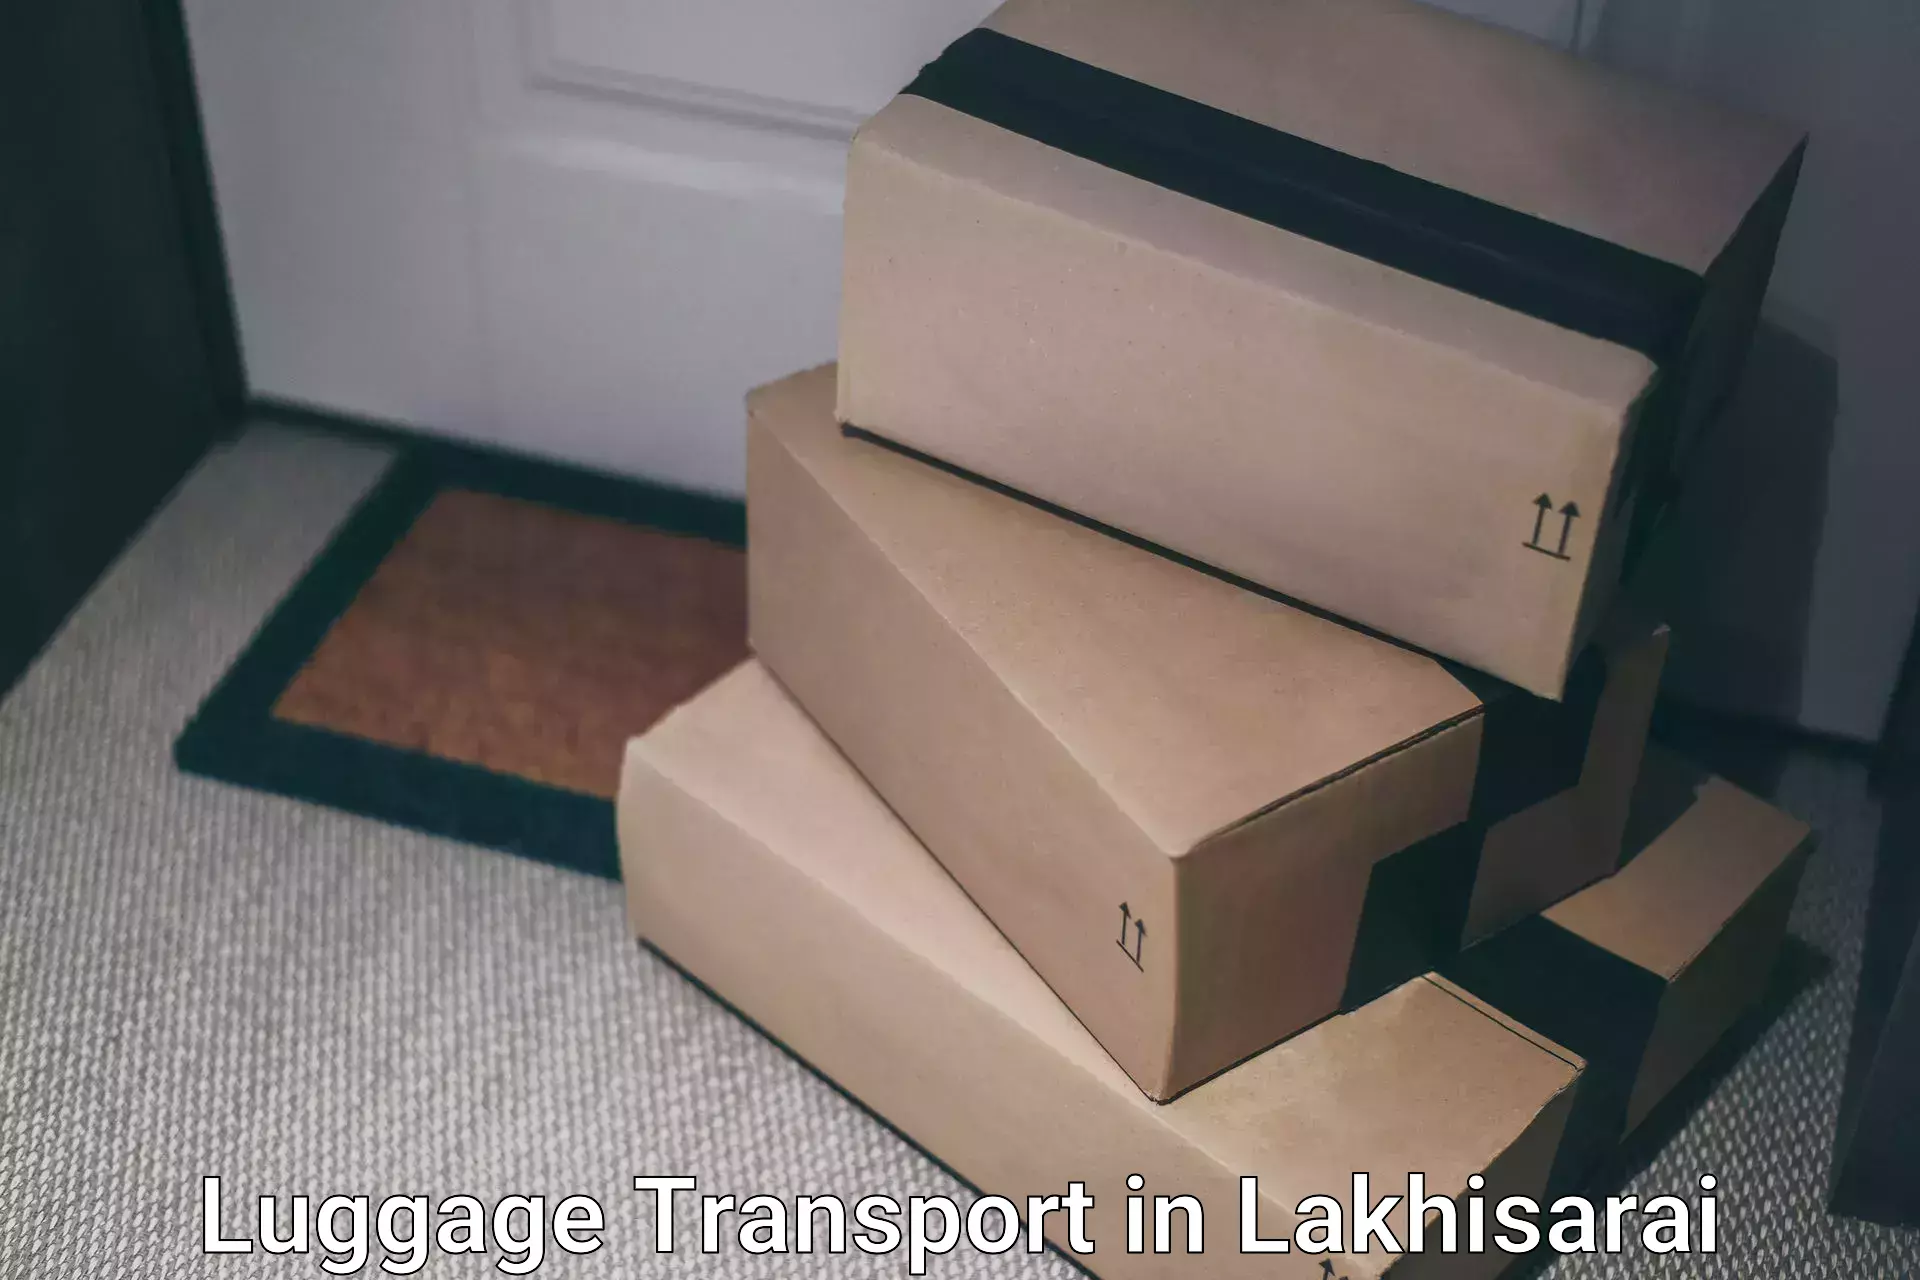 Express baggage shipping in Lakhisarai